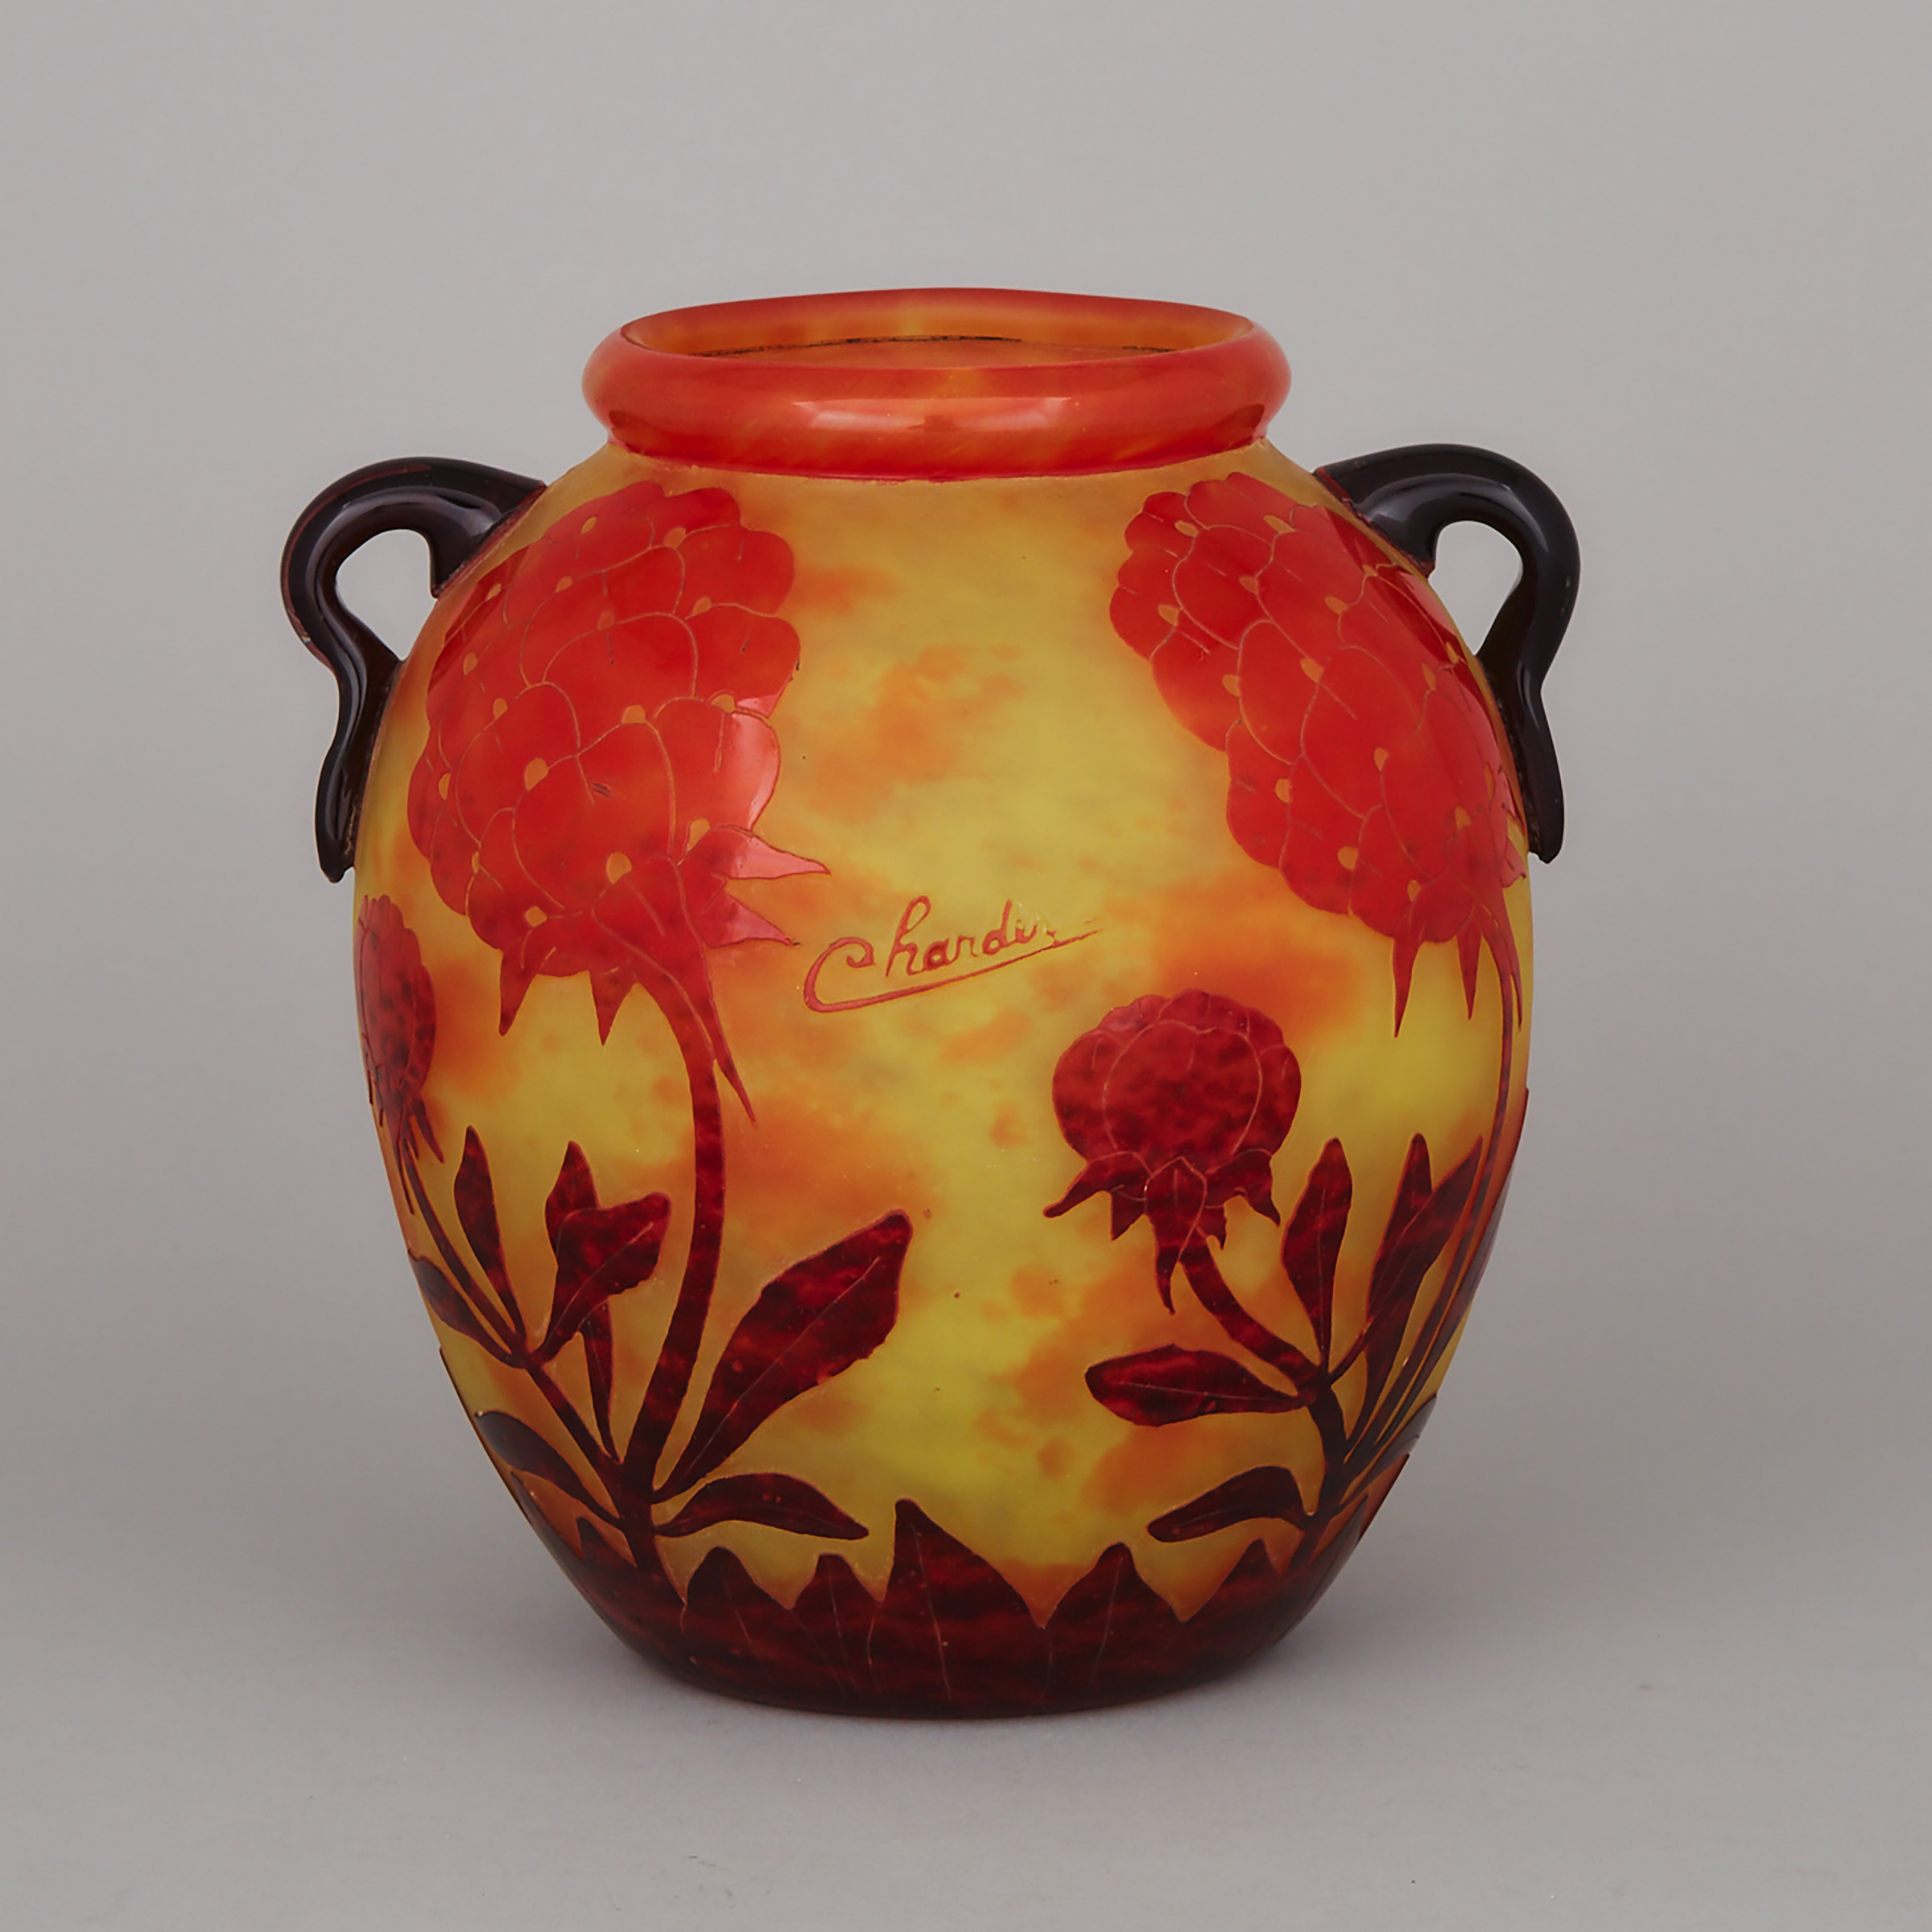 Charder Le Verre Français ‘Pivoines’ Cameo Glass Two-Handled Vase, c.1925